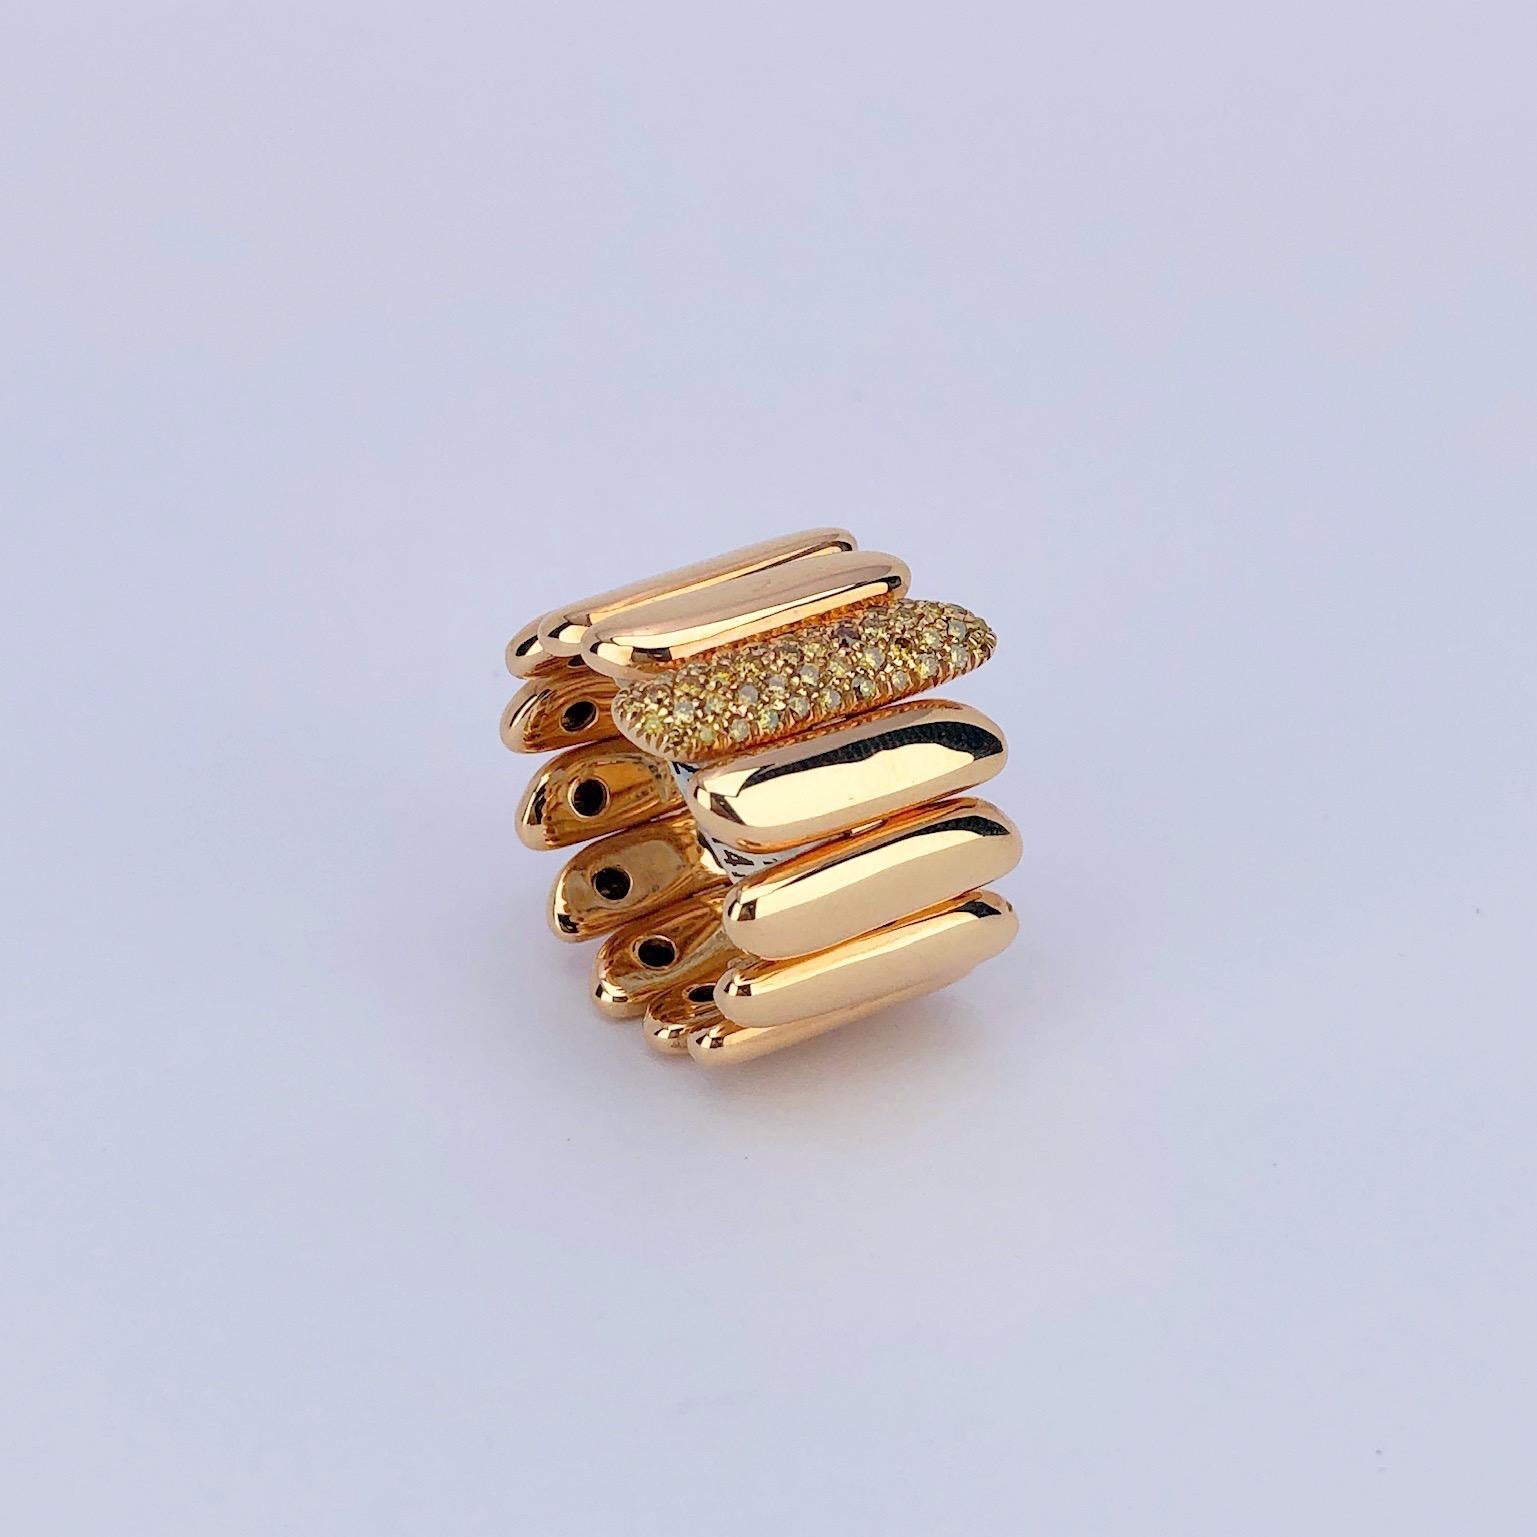 40 karat gold ring